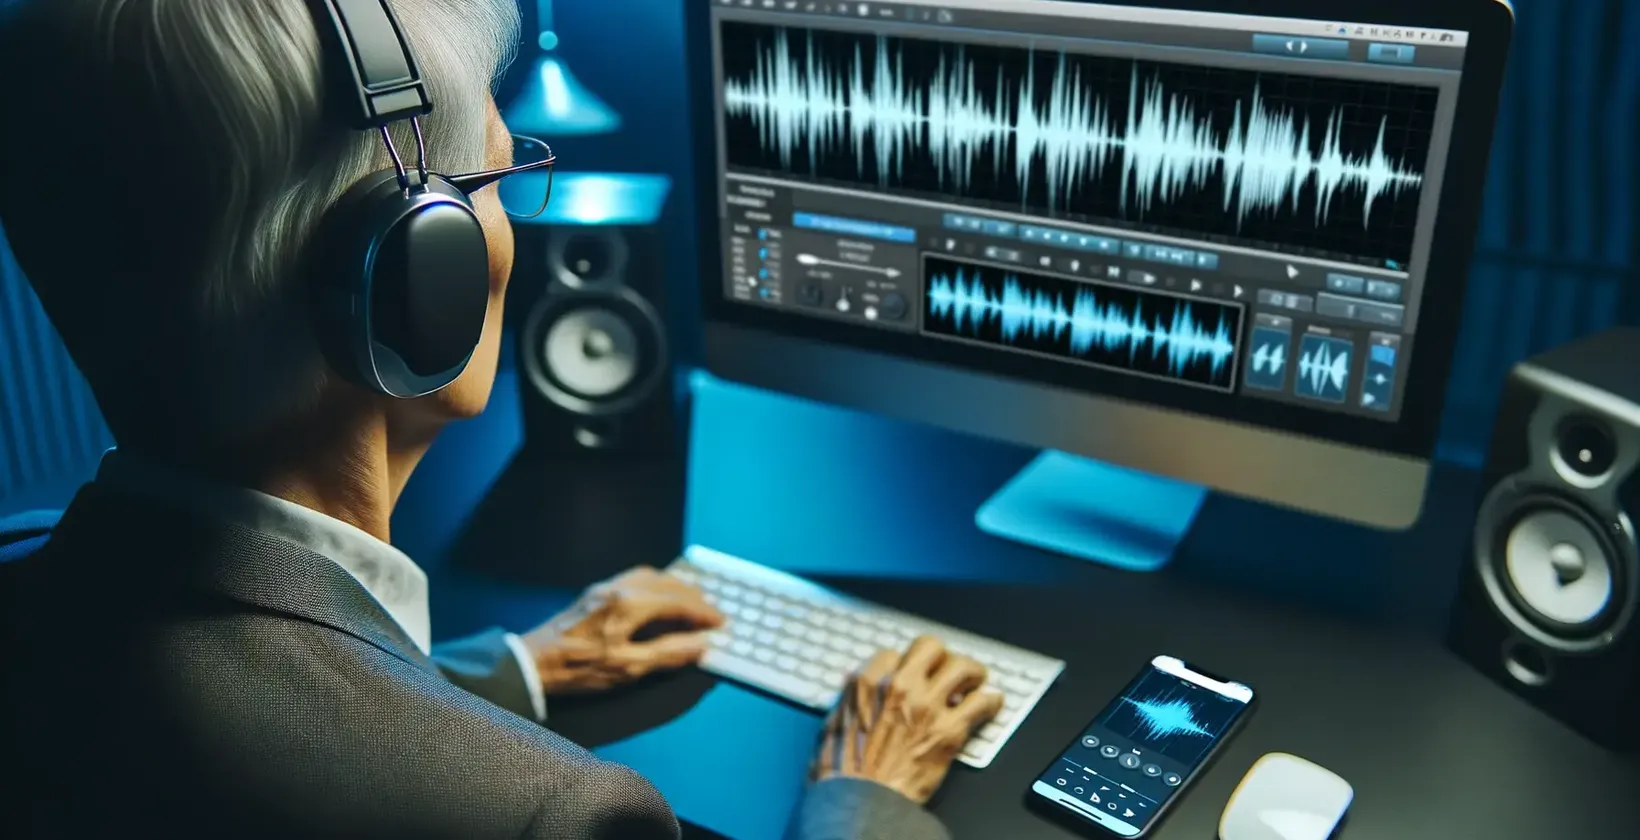 Die Audio-zu-Text-Szene für Hörgeschädigte zeigt einen Silberhaarigen mit Kopfhörern, der an einem blau beleuchteten Schreibtisch mit Brille arbeitet.